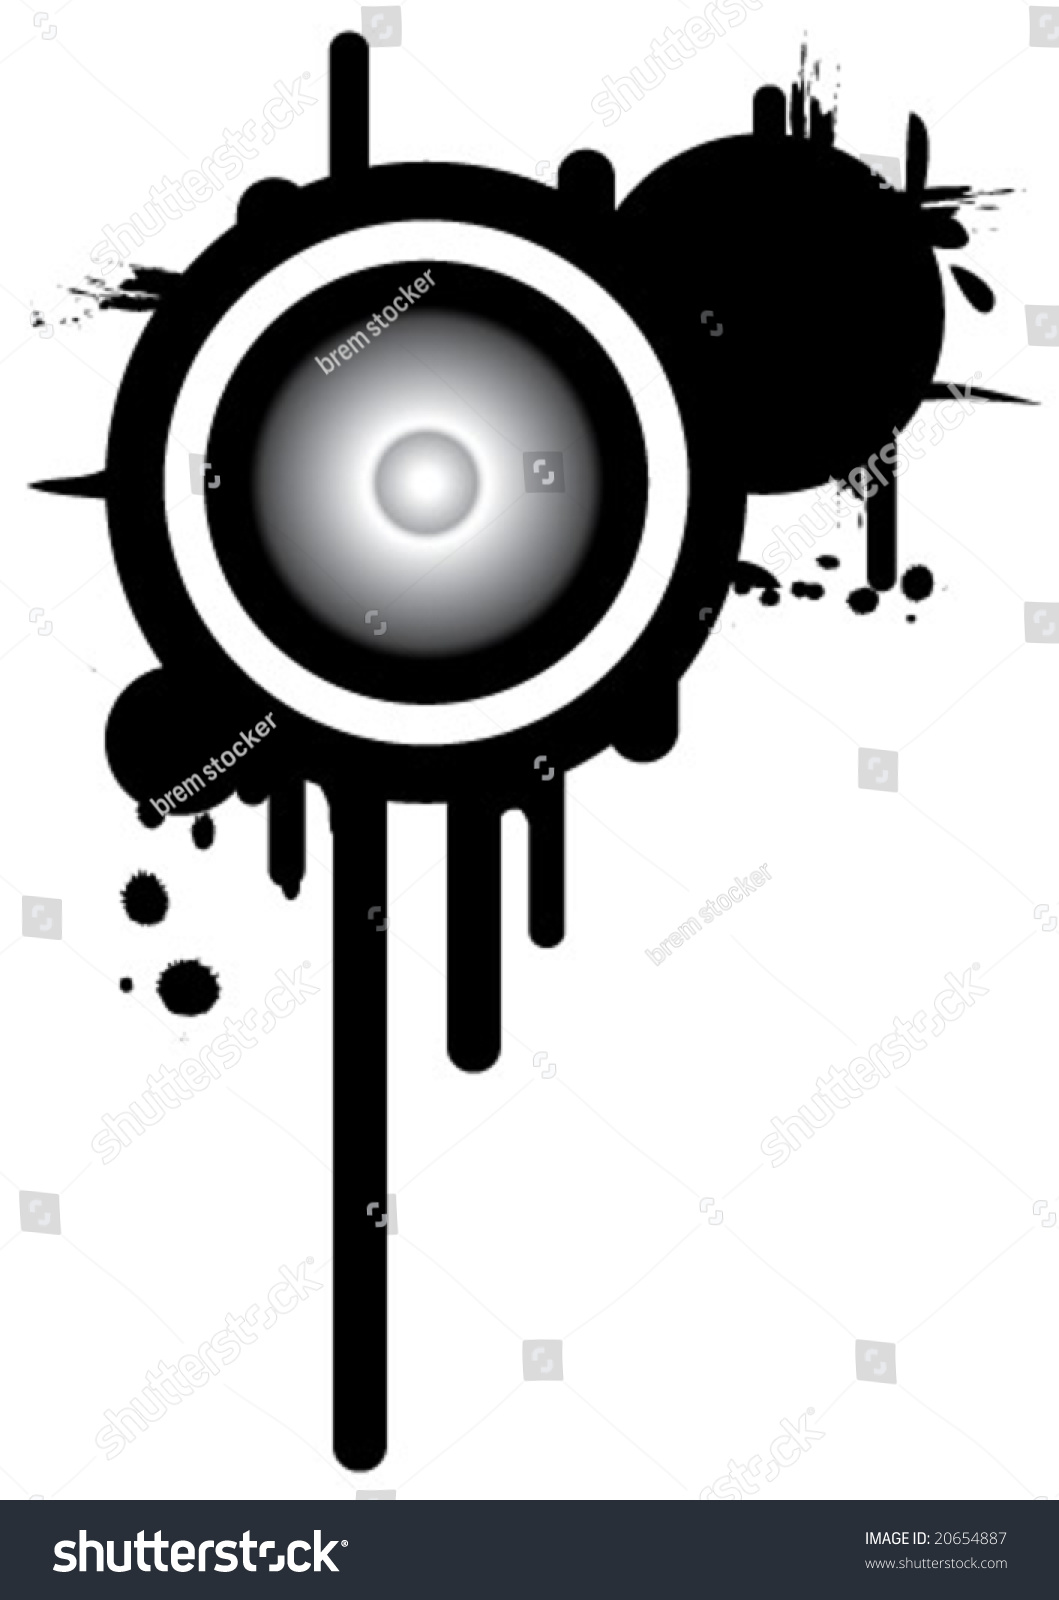 Grunge Speaker Stock Vector Illustration 20654887 : Shutterstock